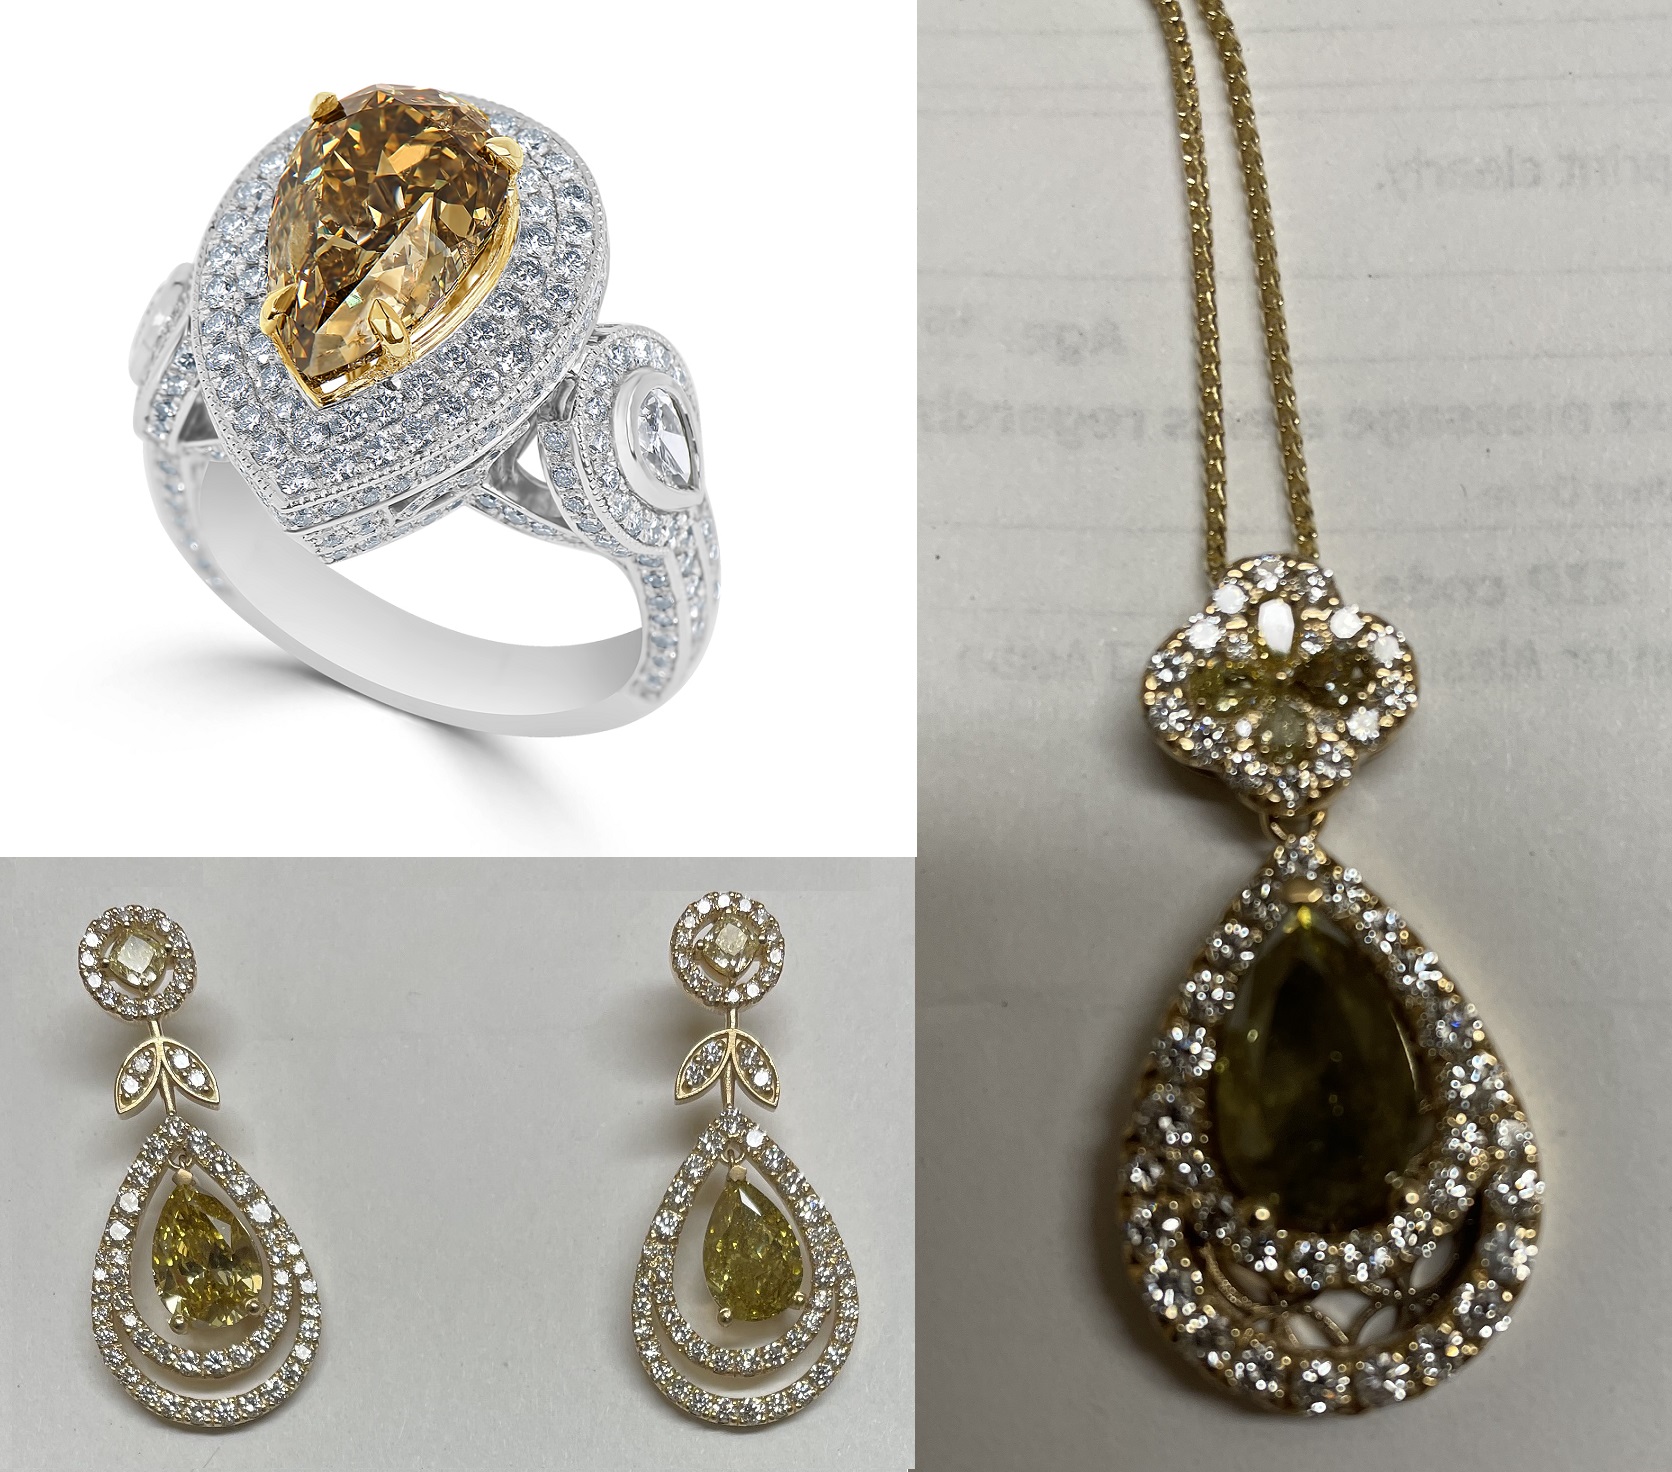 Mixed Fancy Colour & Chameleon Diamond Ring, Pendant & Earrings Set